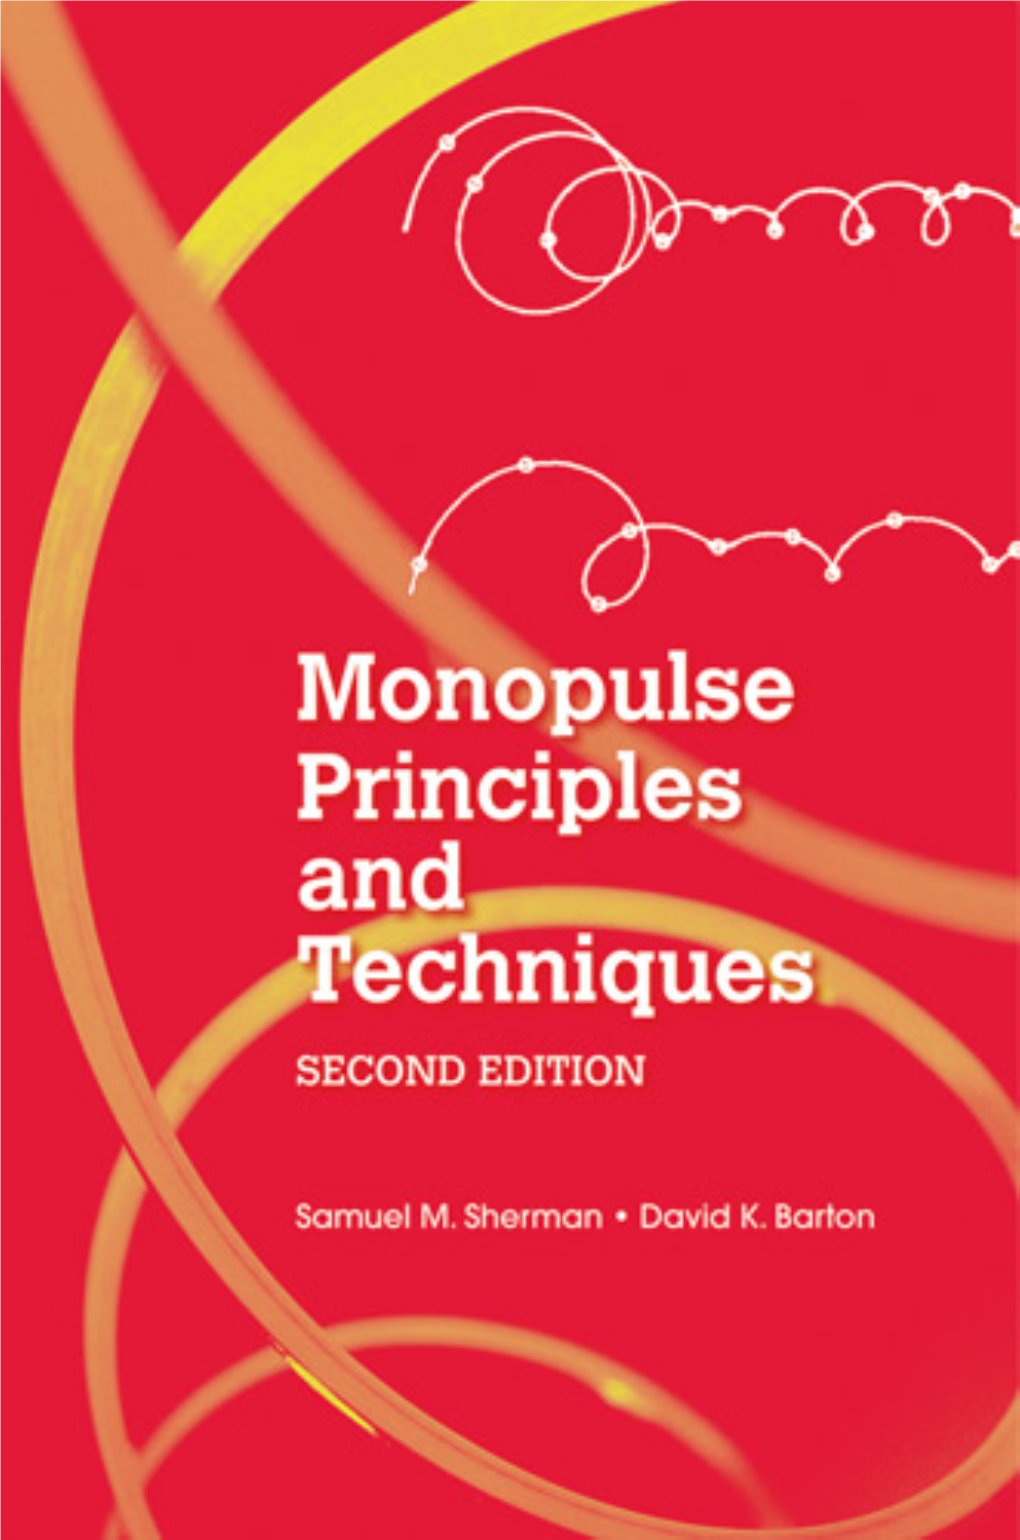 Monopulse Principles and Techniques, Second Edition, Samuel M